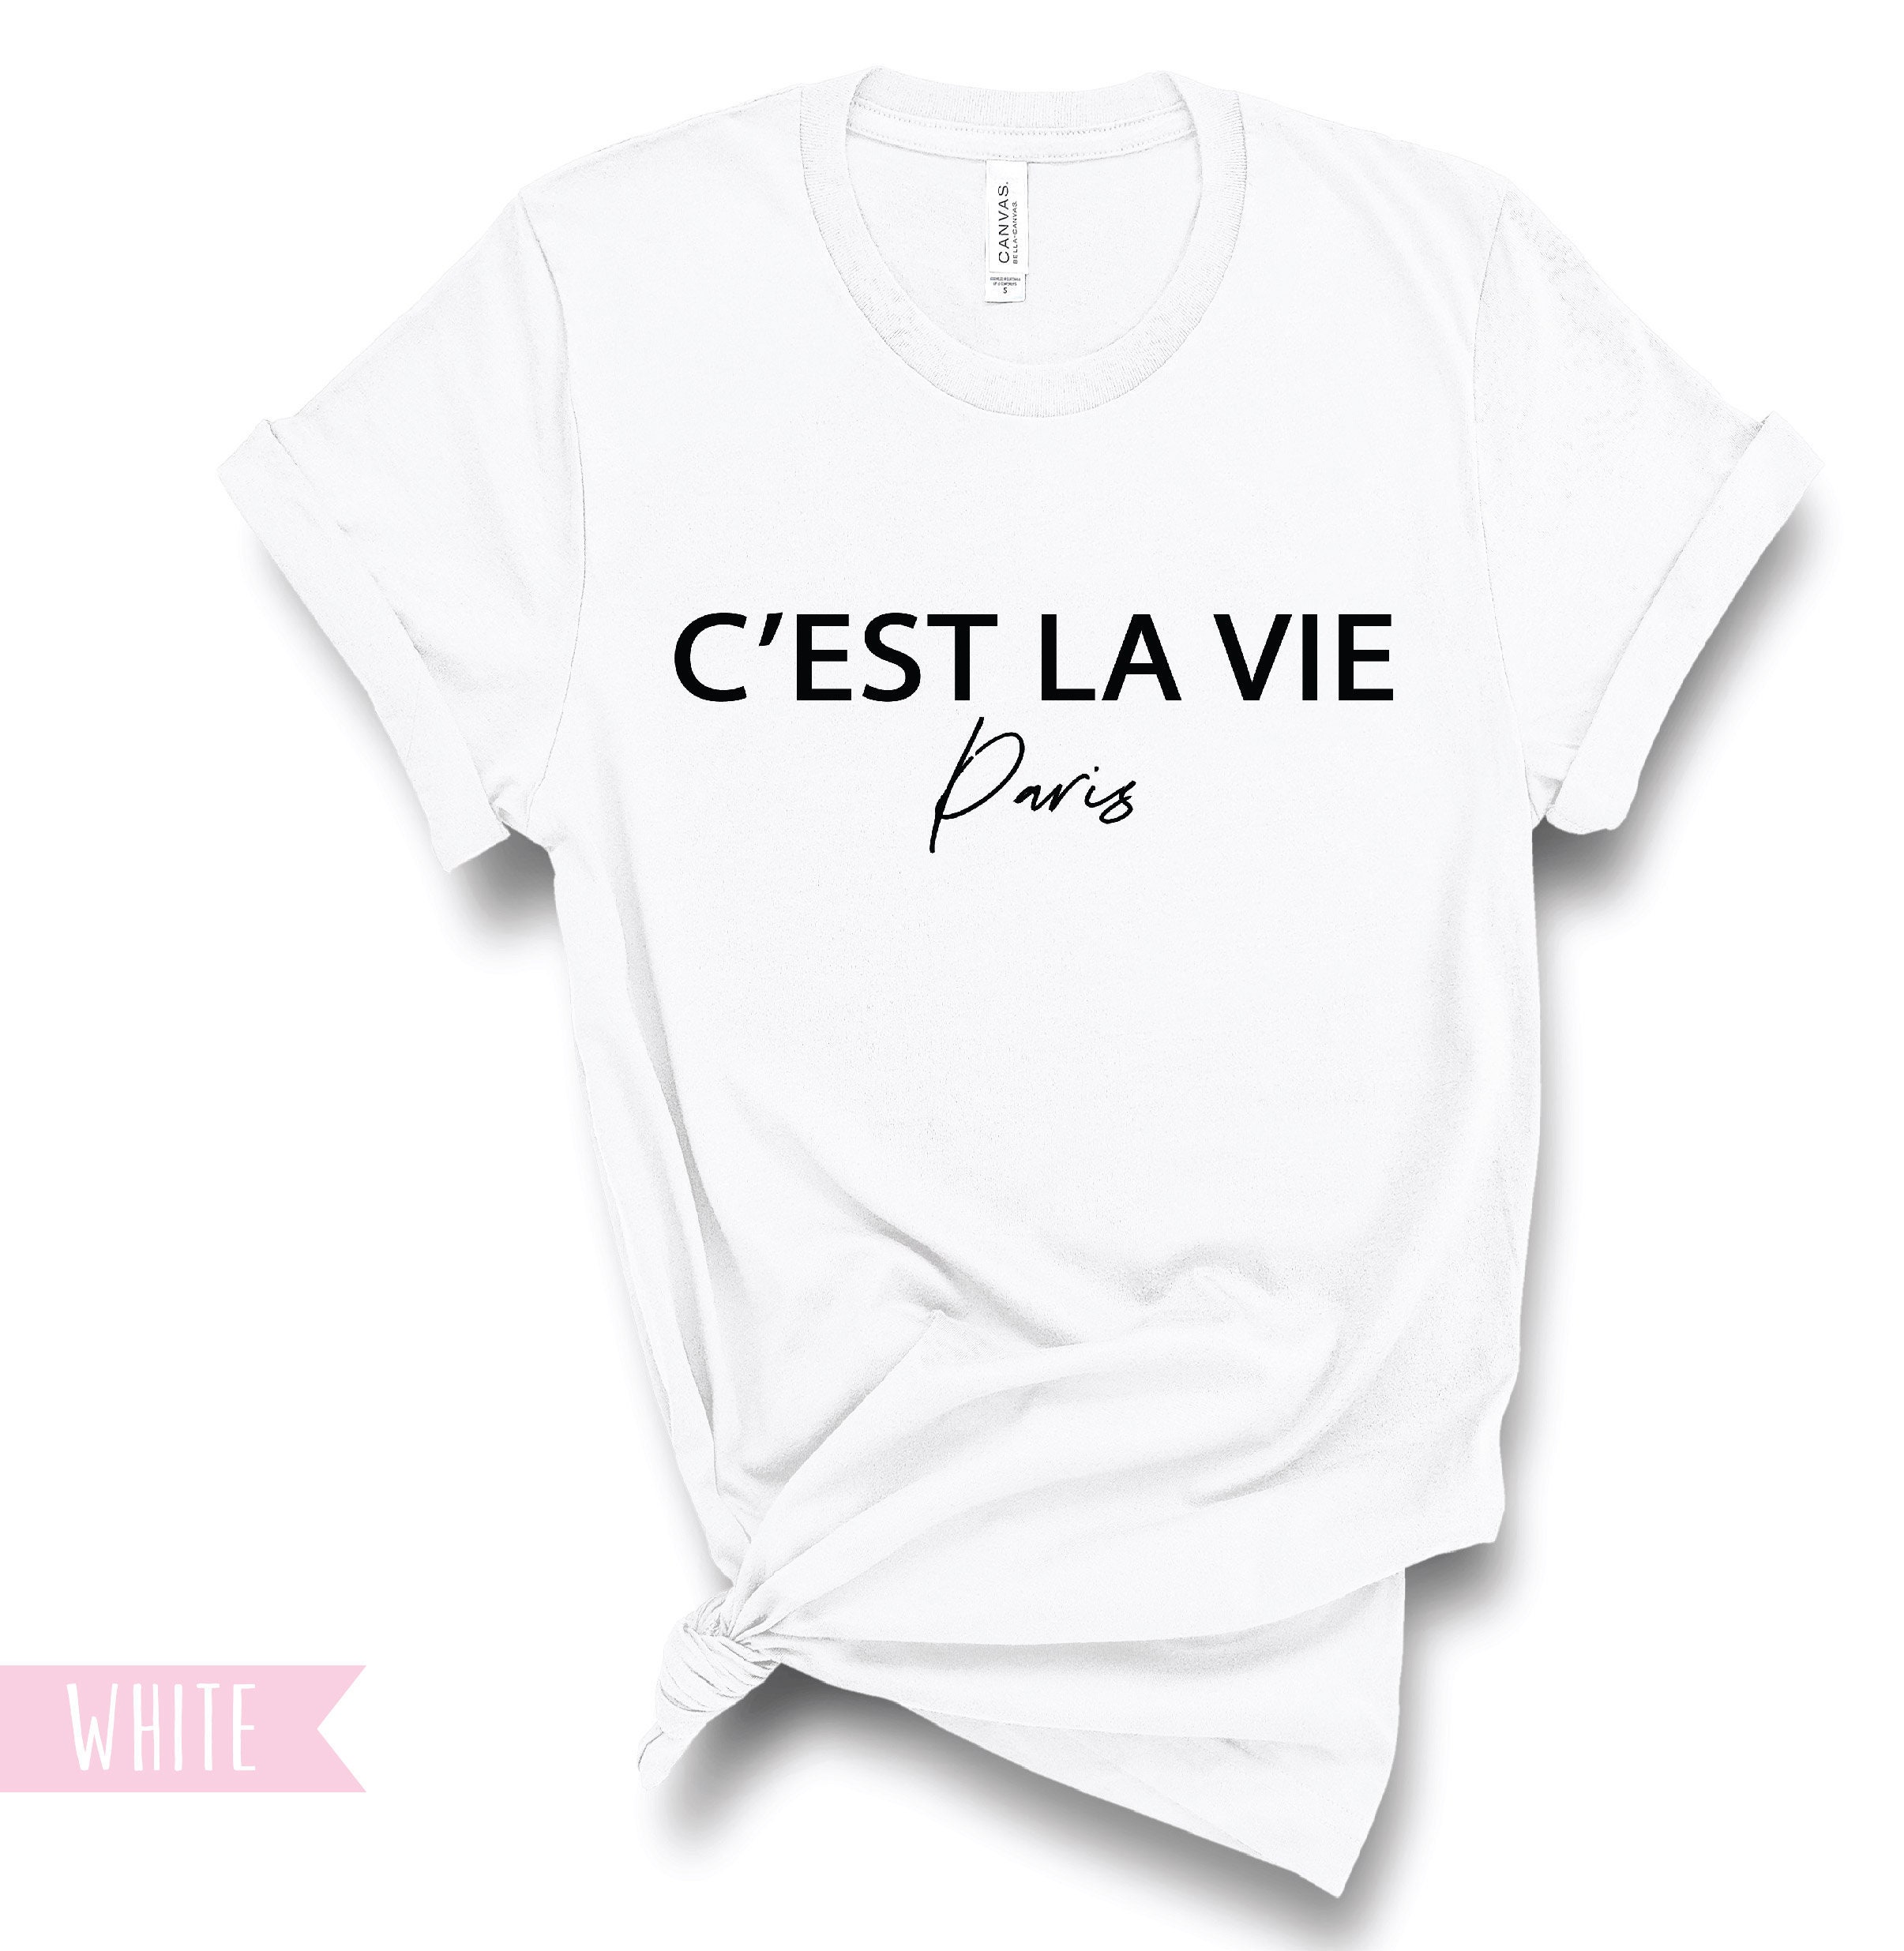 Перевод c est la vie на русский. CEST la vie Paris футболка. Толстовка CEST la vie Paris. CEST la vie одежда. G’ est la vie одежда.